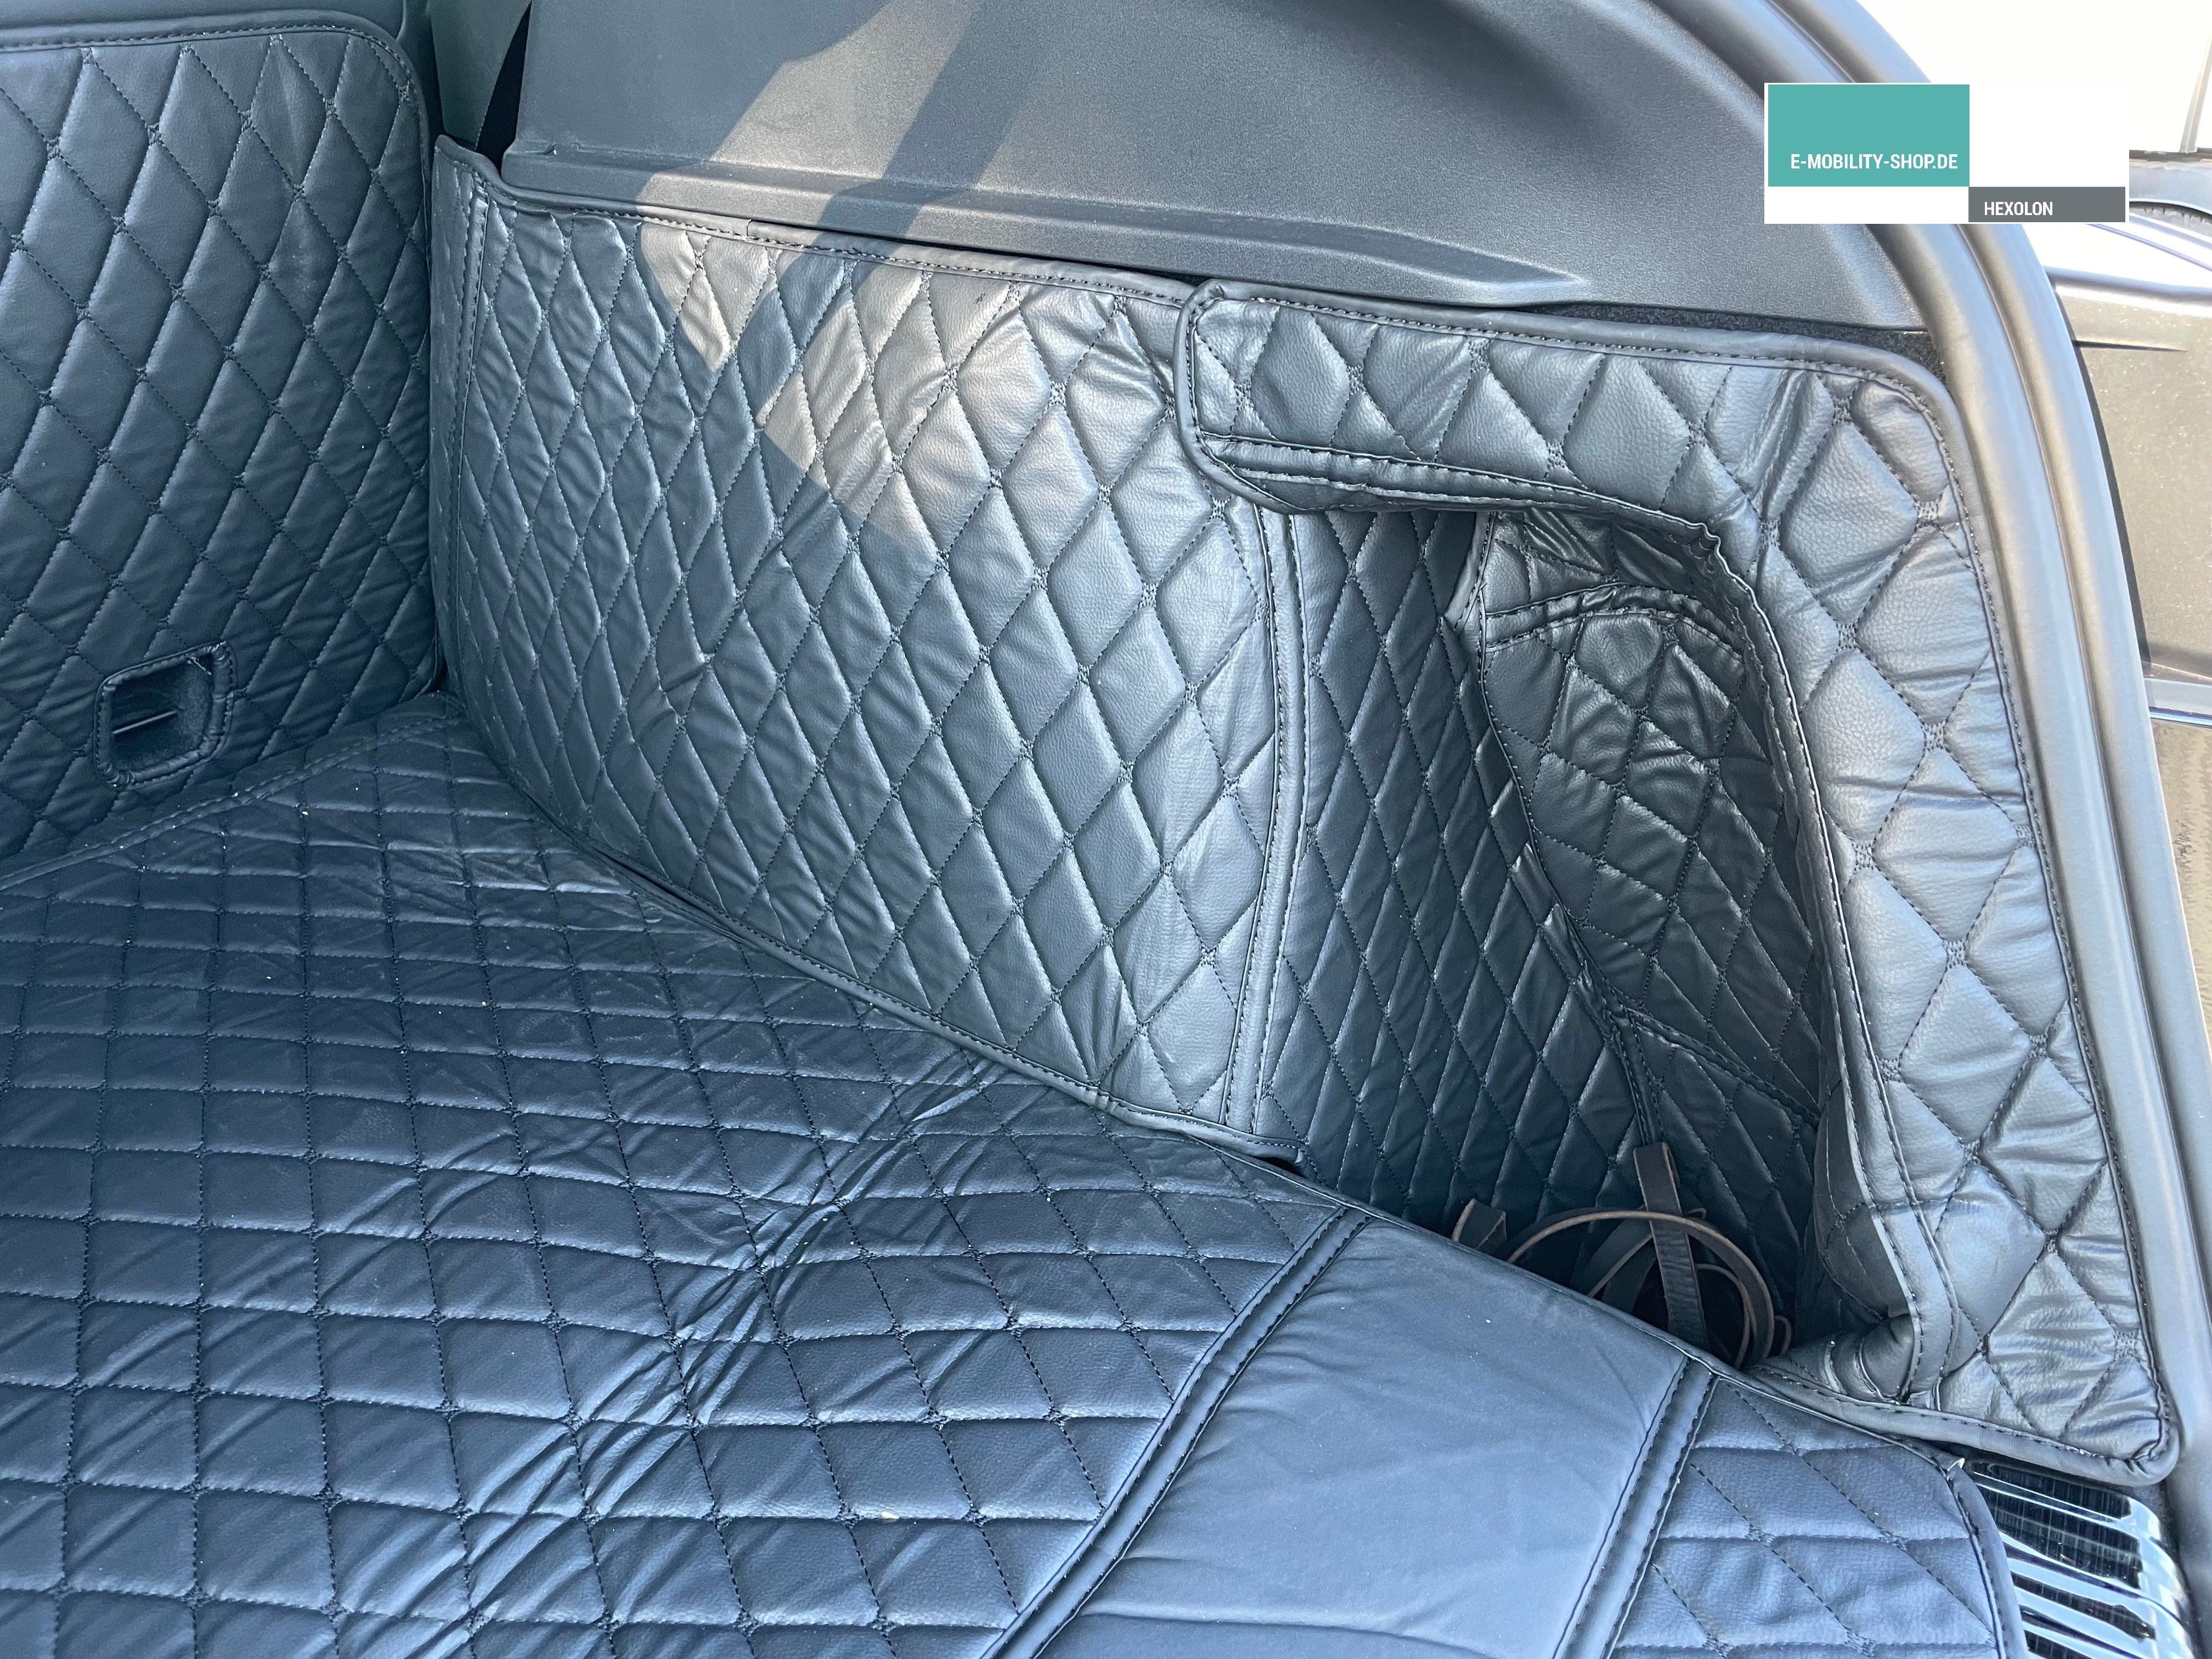 Welche Kofferraum- und Fußmatten nutze ich im Tesla Model Y 